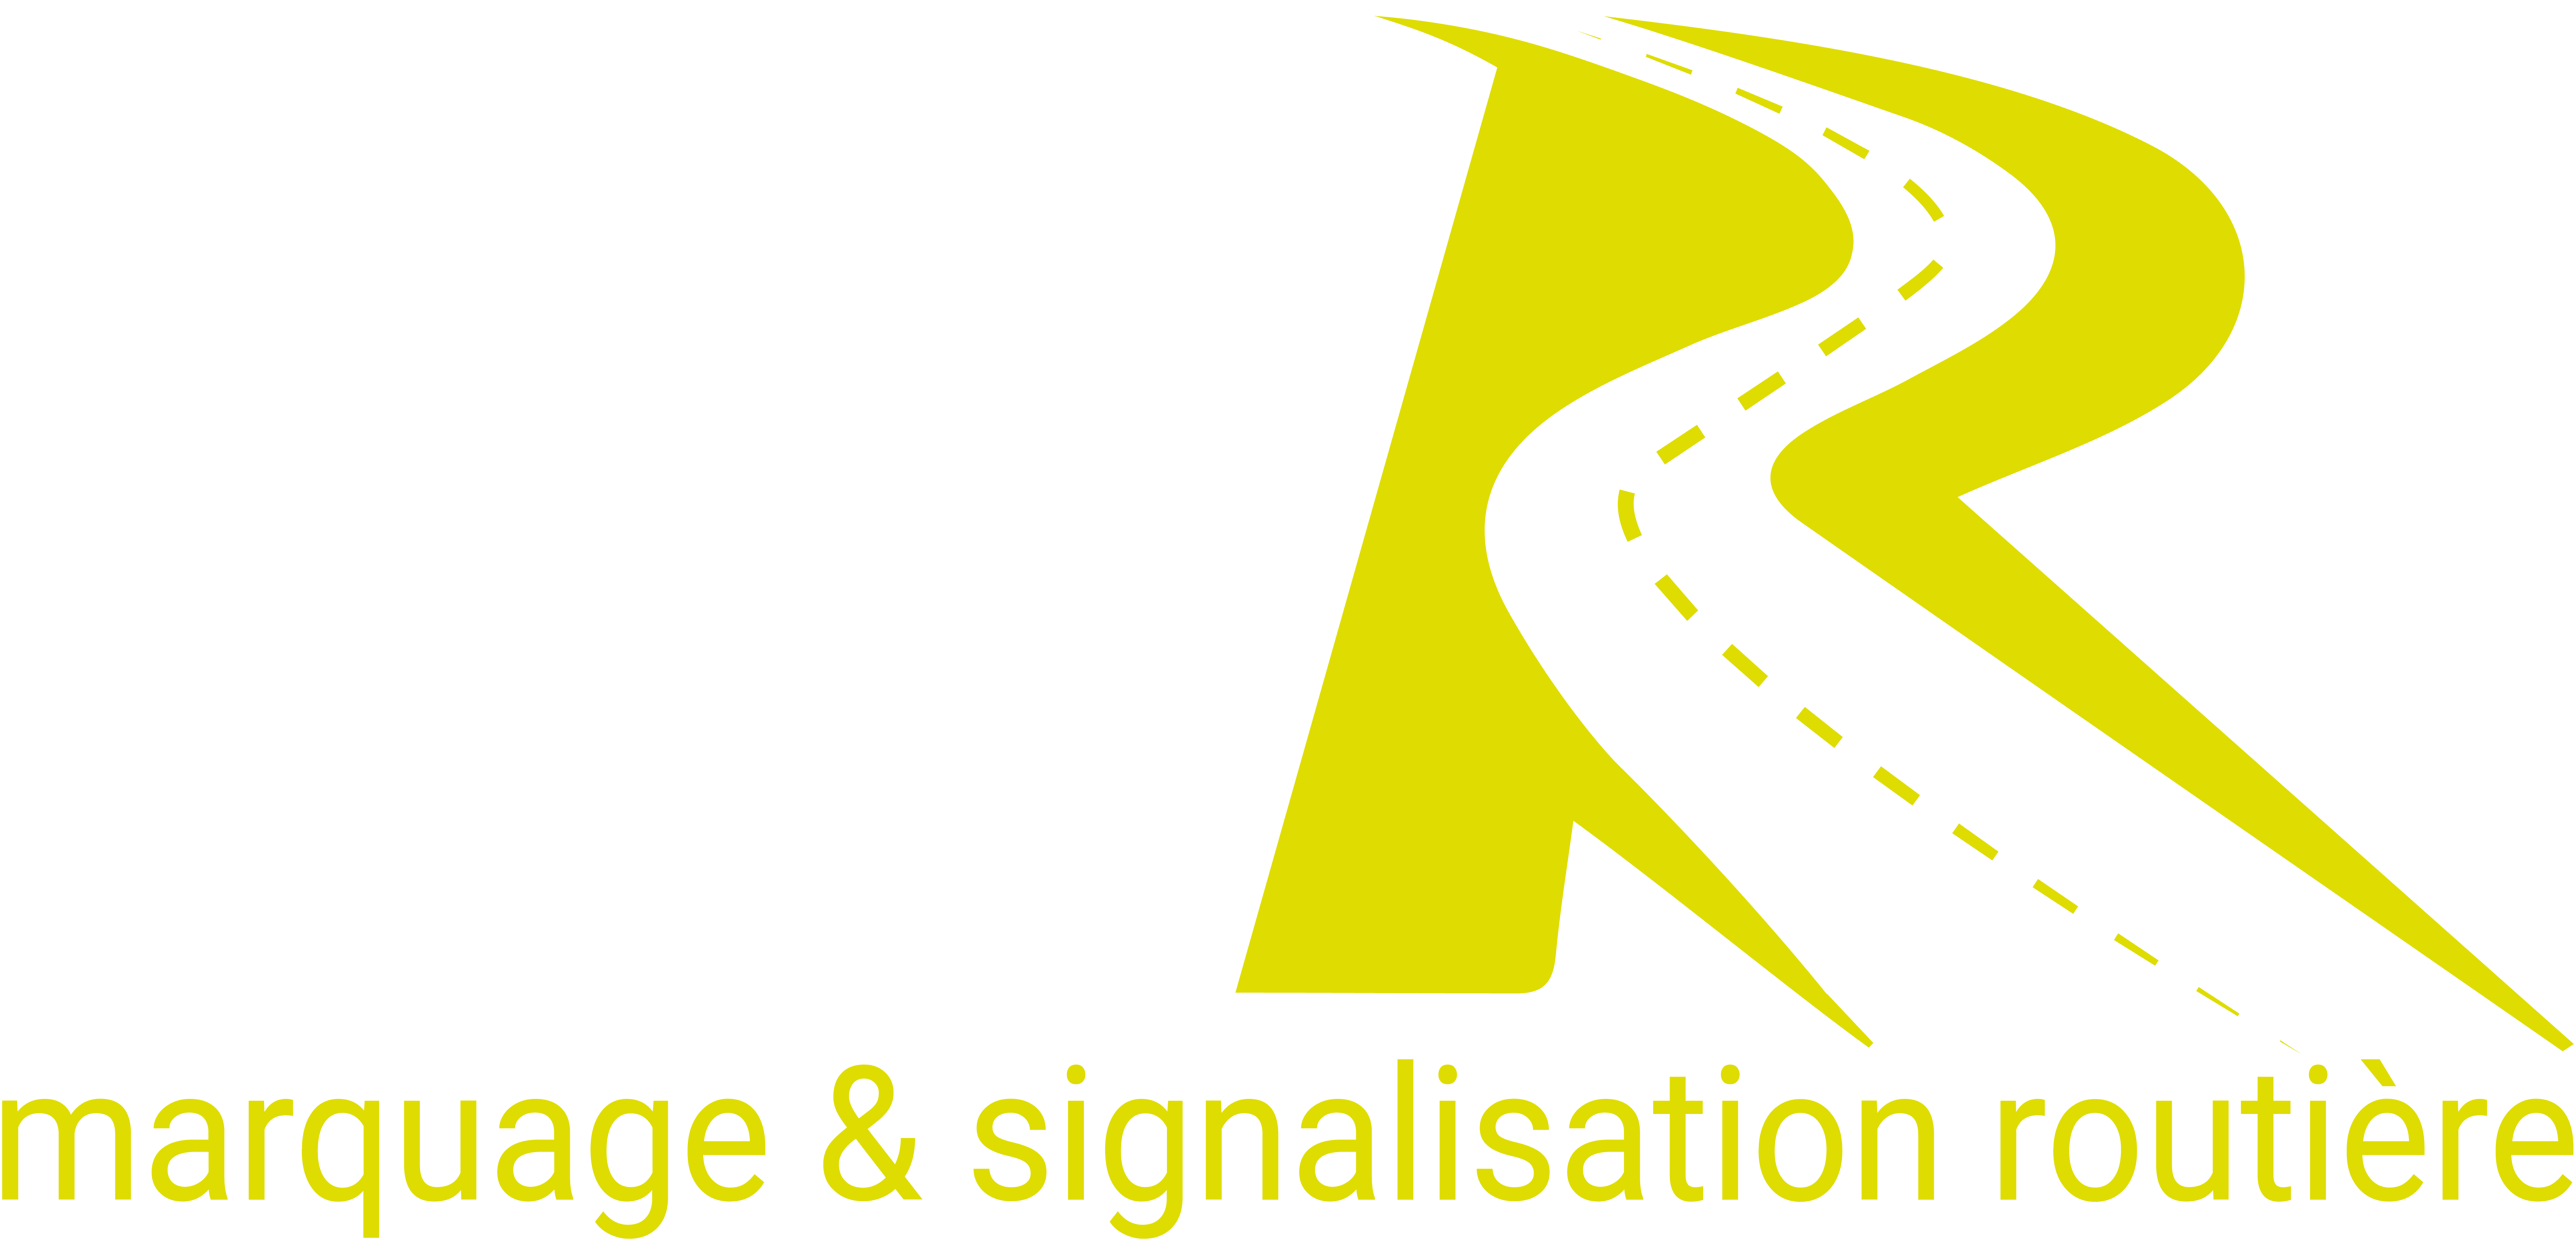 Logo MSR7627 (ex MSR Normandie)